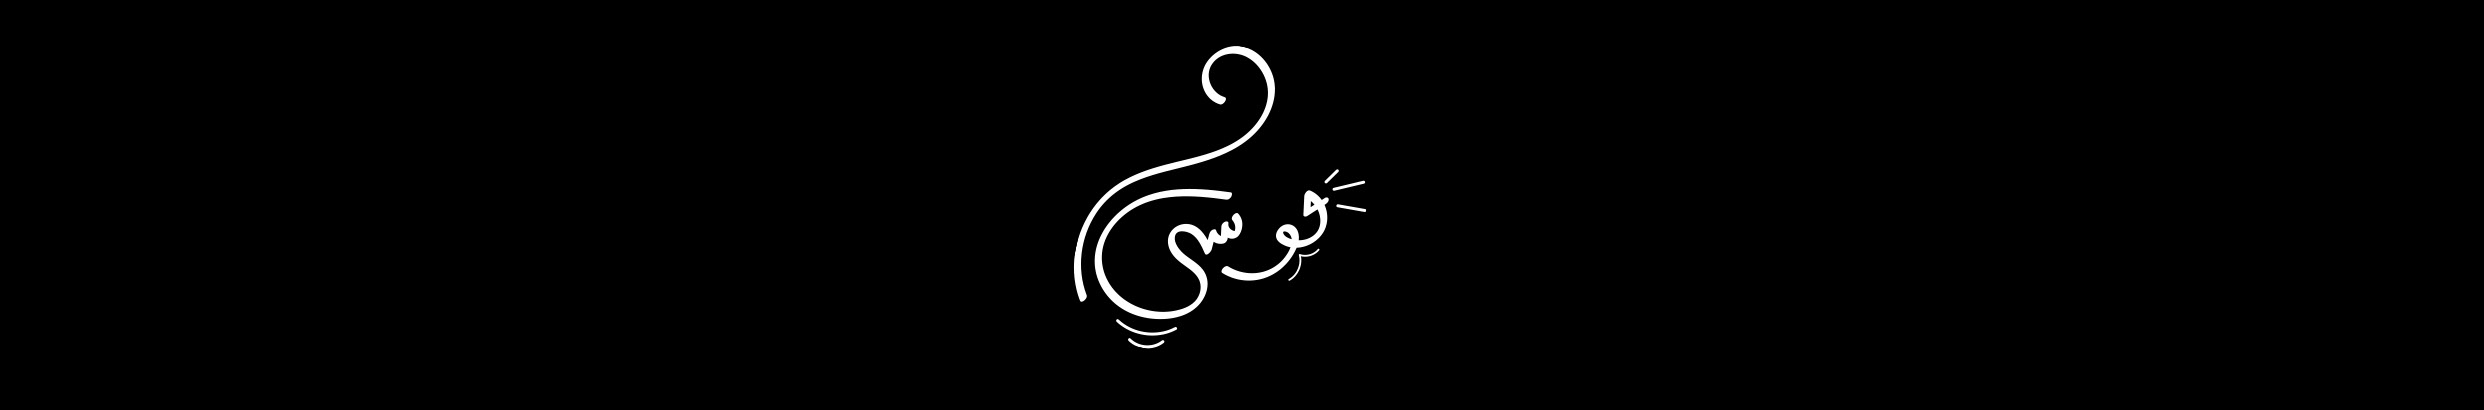 Mohamed Sami's profile banner